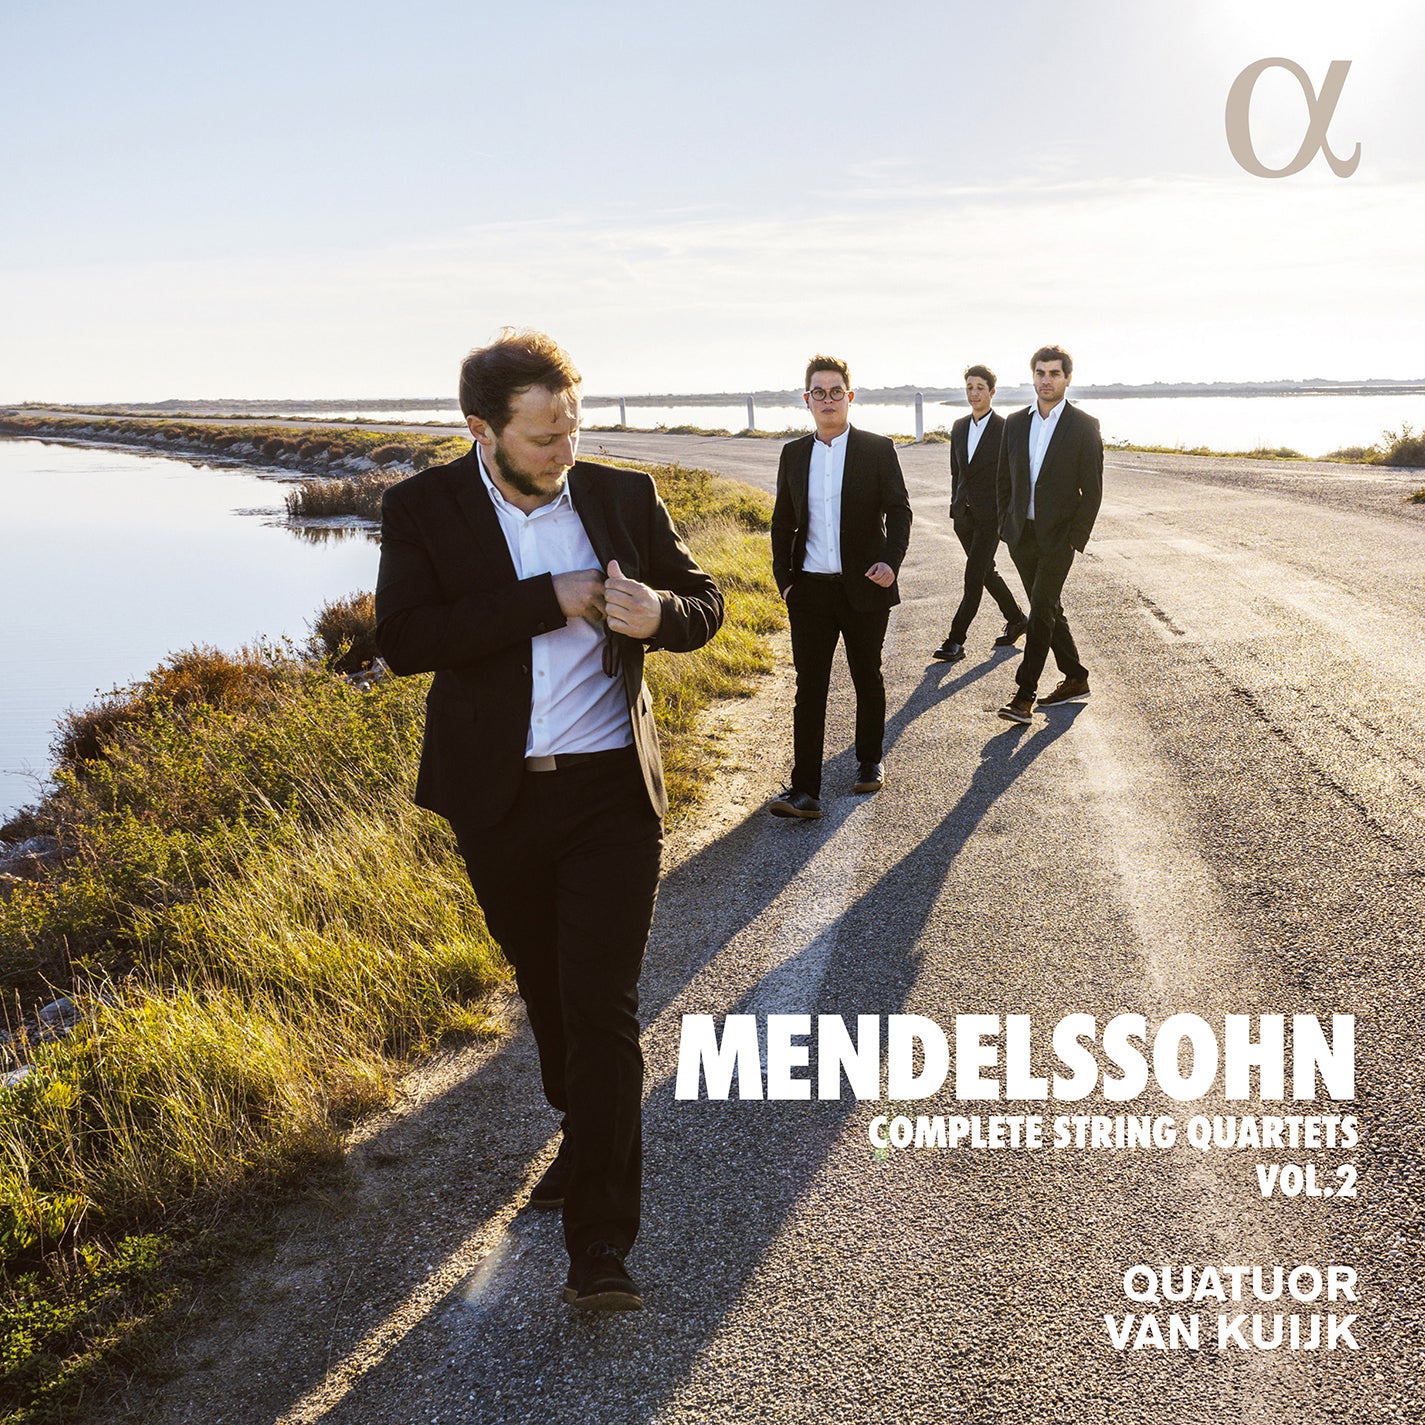 Mendelssohn: Complete String Quartets, Vol. 2 / Quatuor Van Kuijk